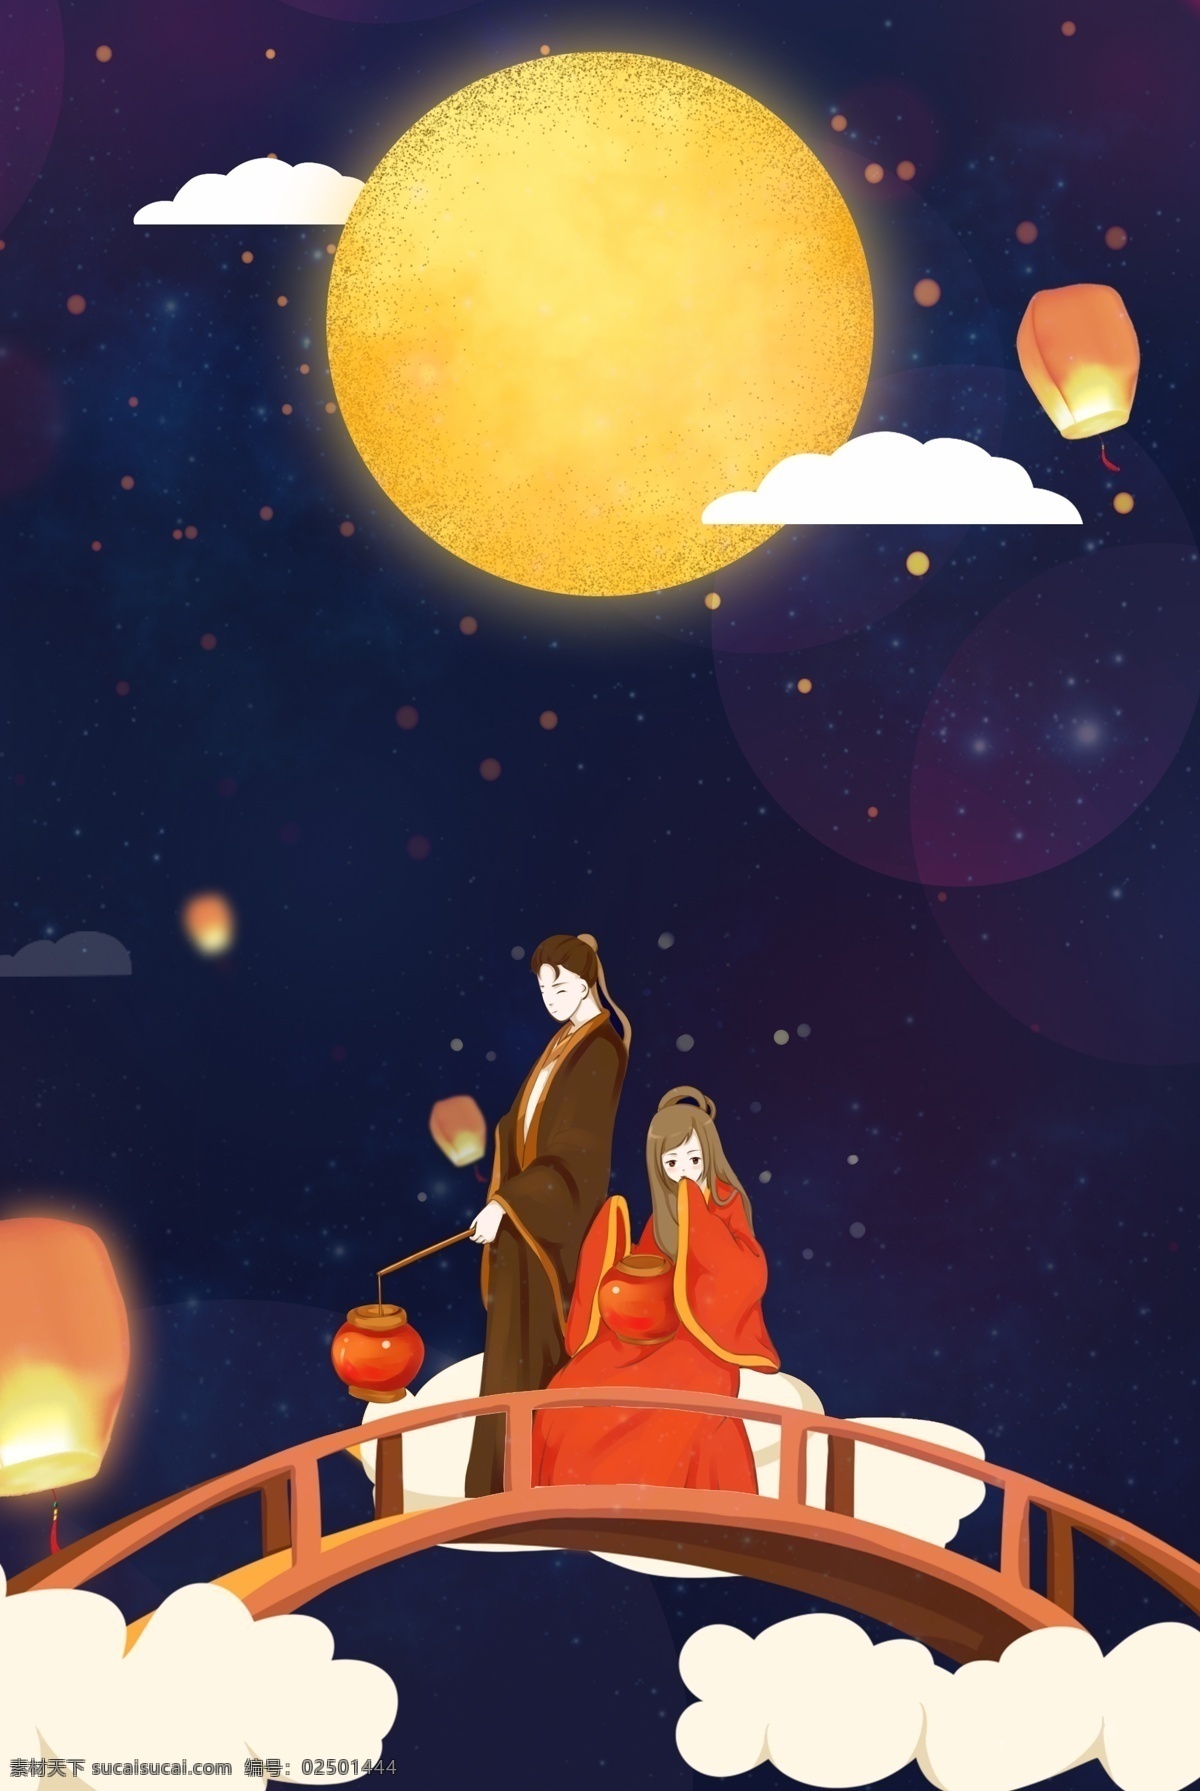 浪漫 七夕 情人节 促销 海报 卡通 人物 夜空 月亮 广告 背景